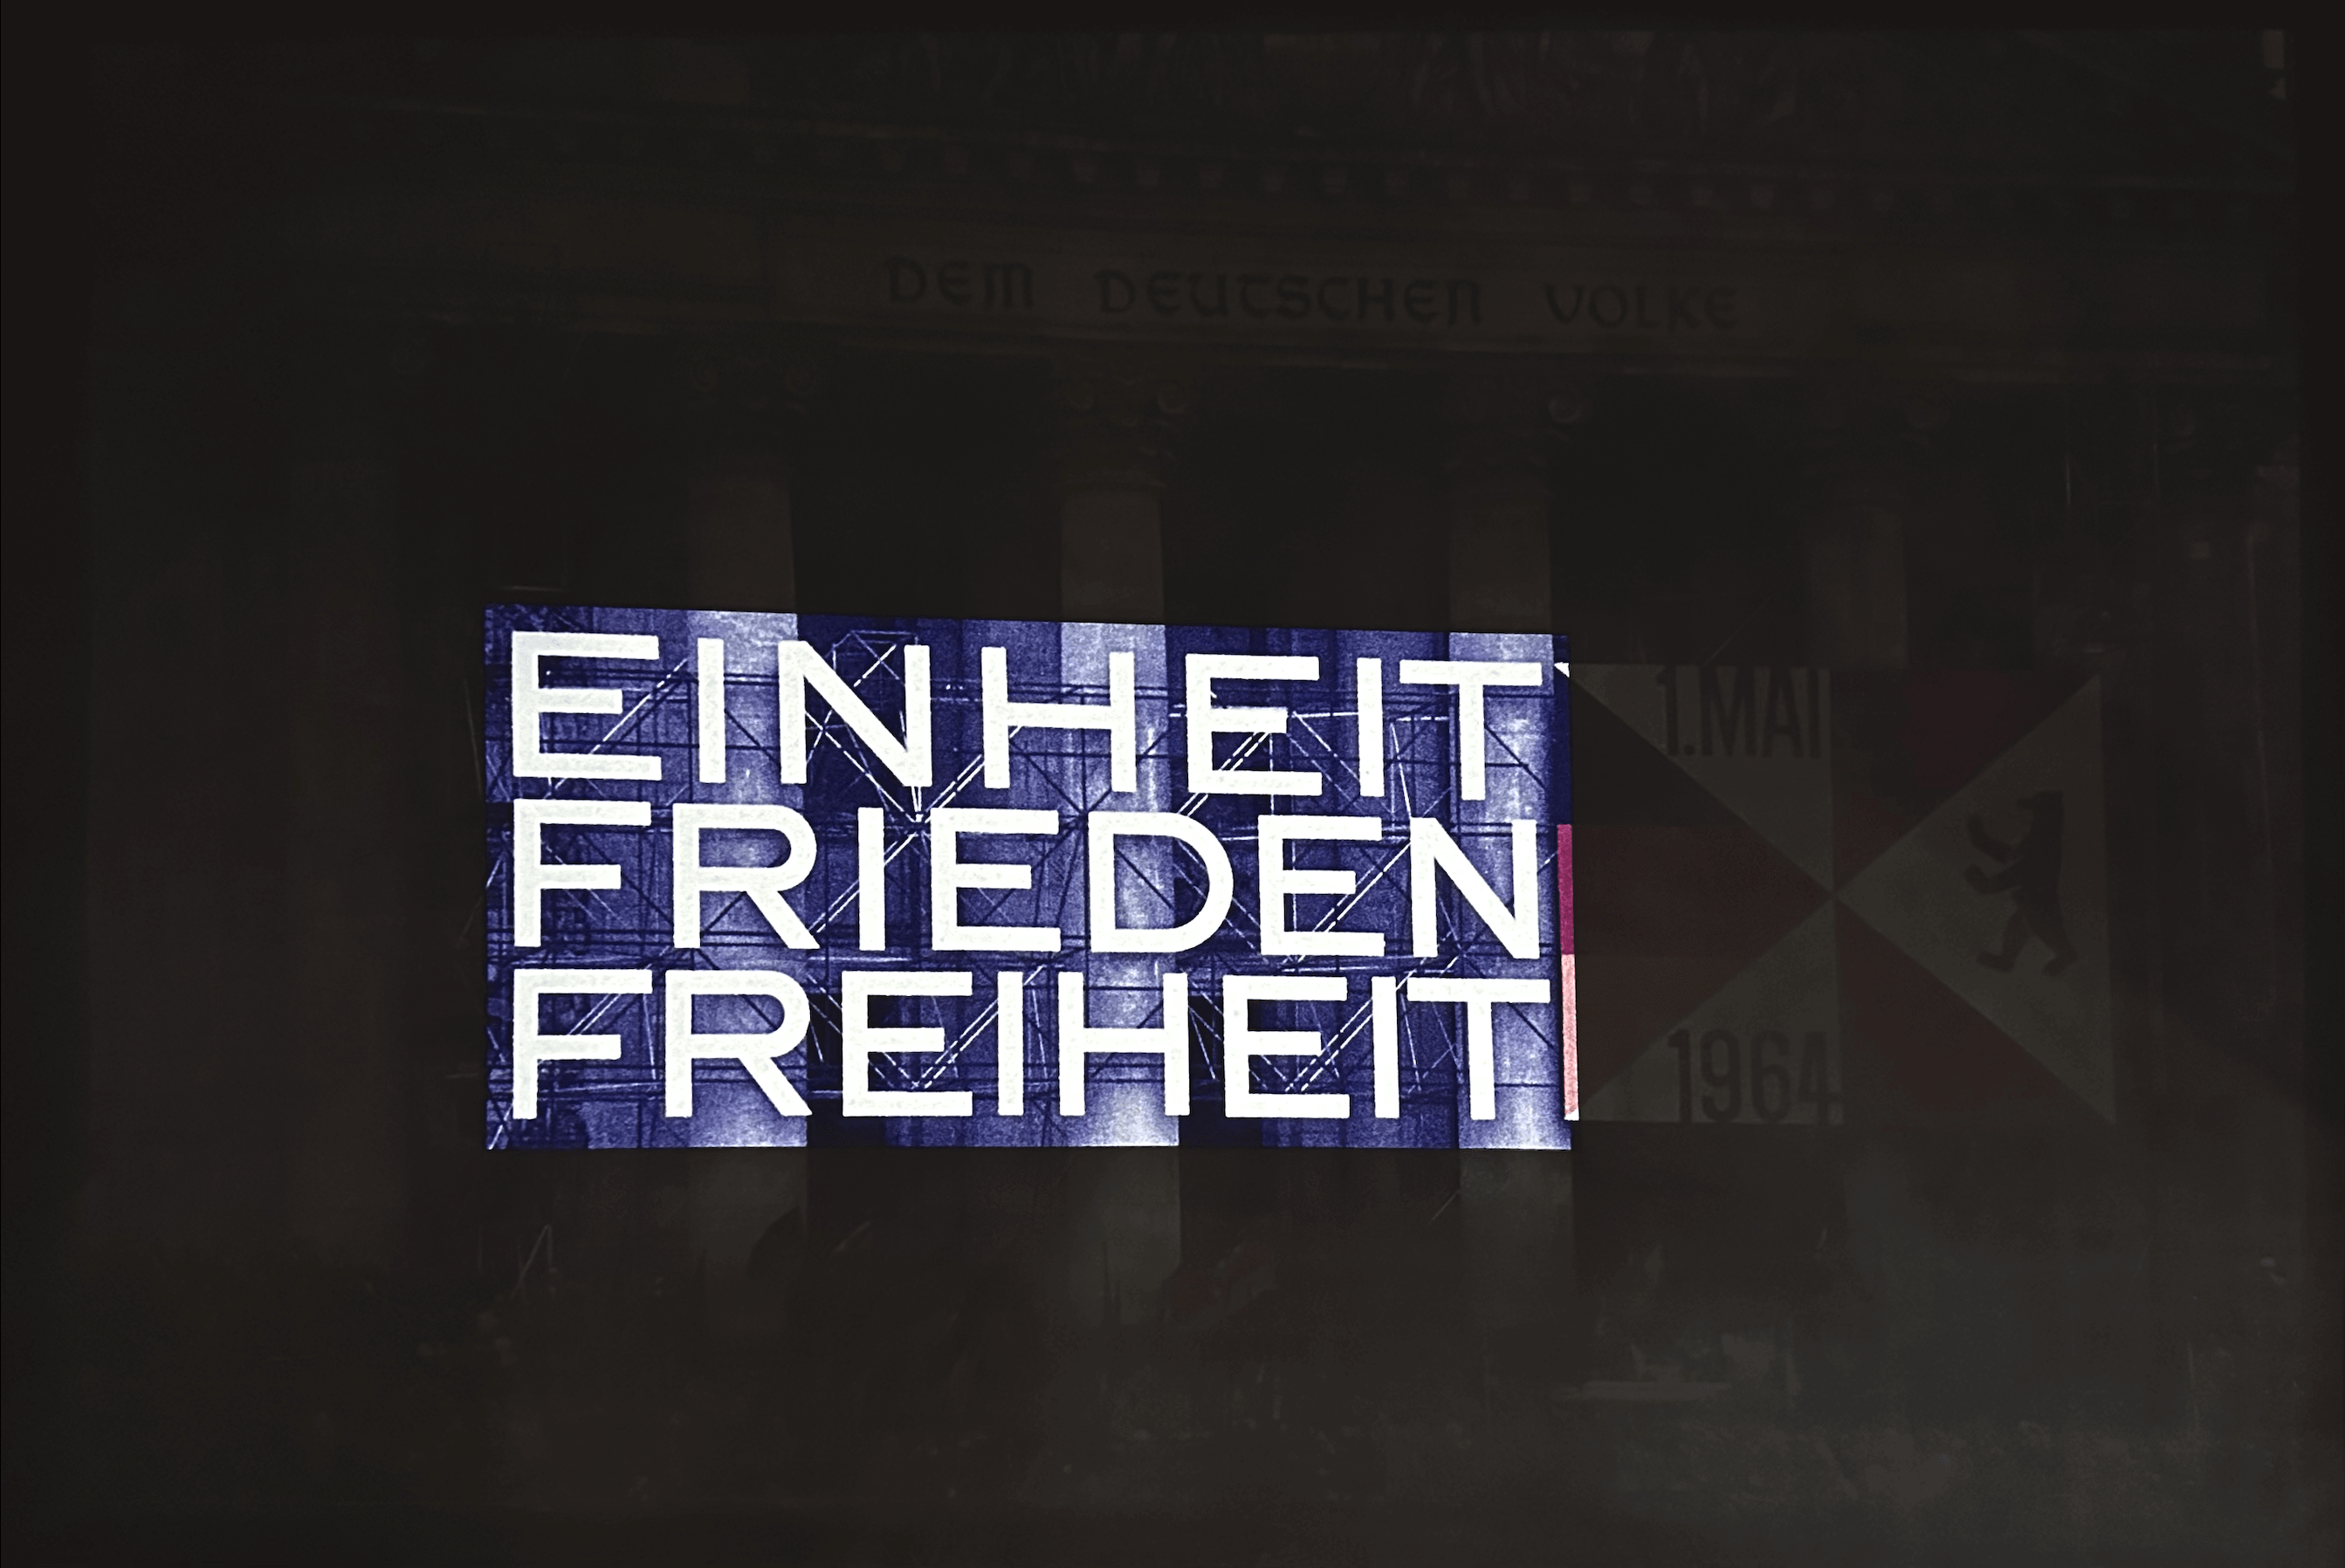 Projekcja niemieckich słów „einheit, frieden, freiheit” oznaczających „jedność, pokój, wolność” na fasadzie budynku.